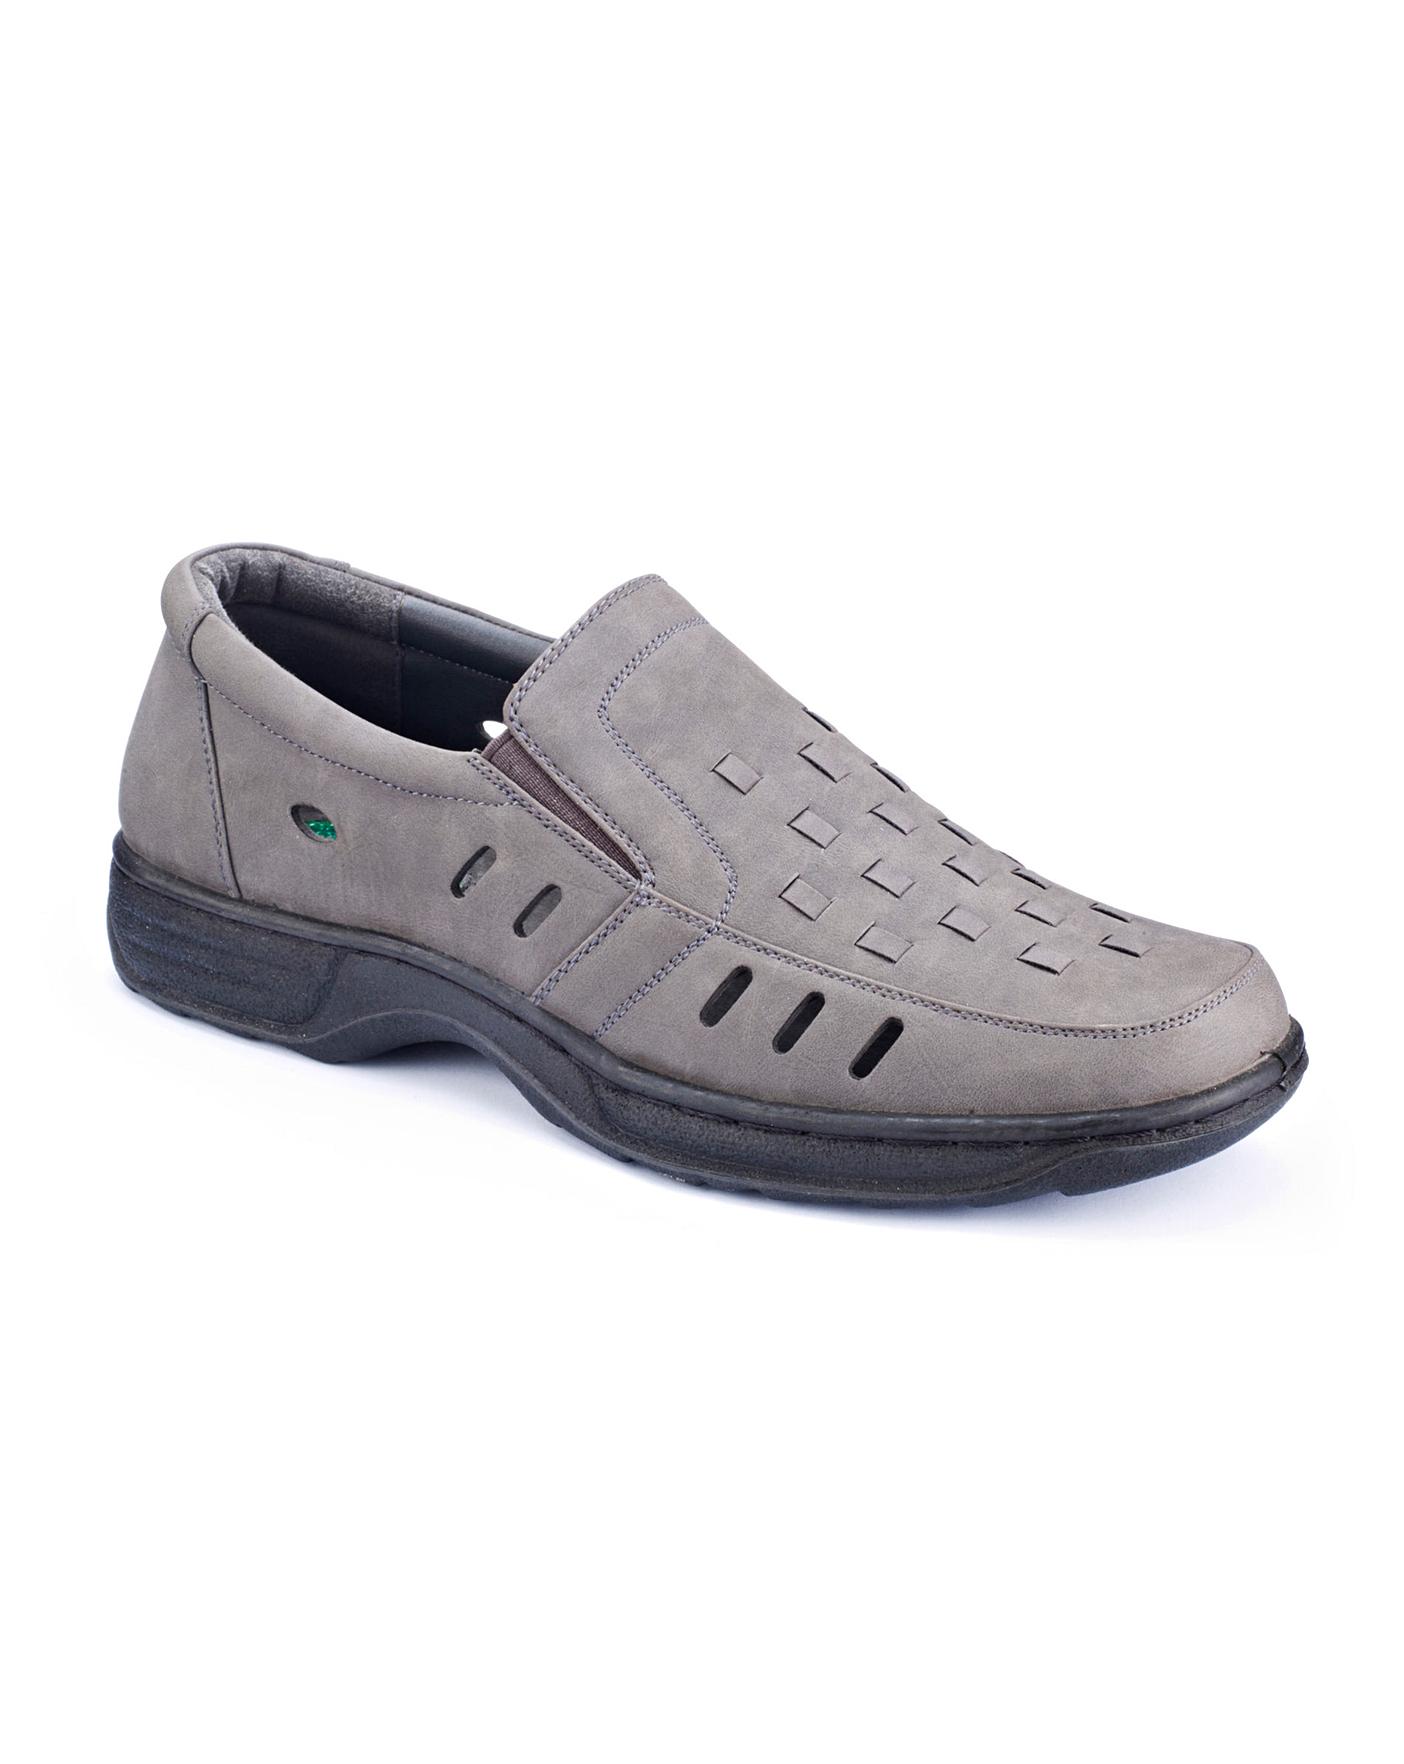 Cushion Walk Mens Shoes Wide Fit | Jacamo